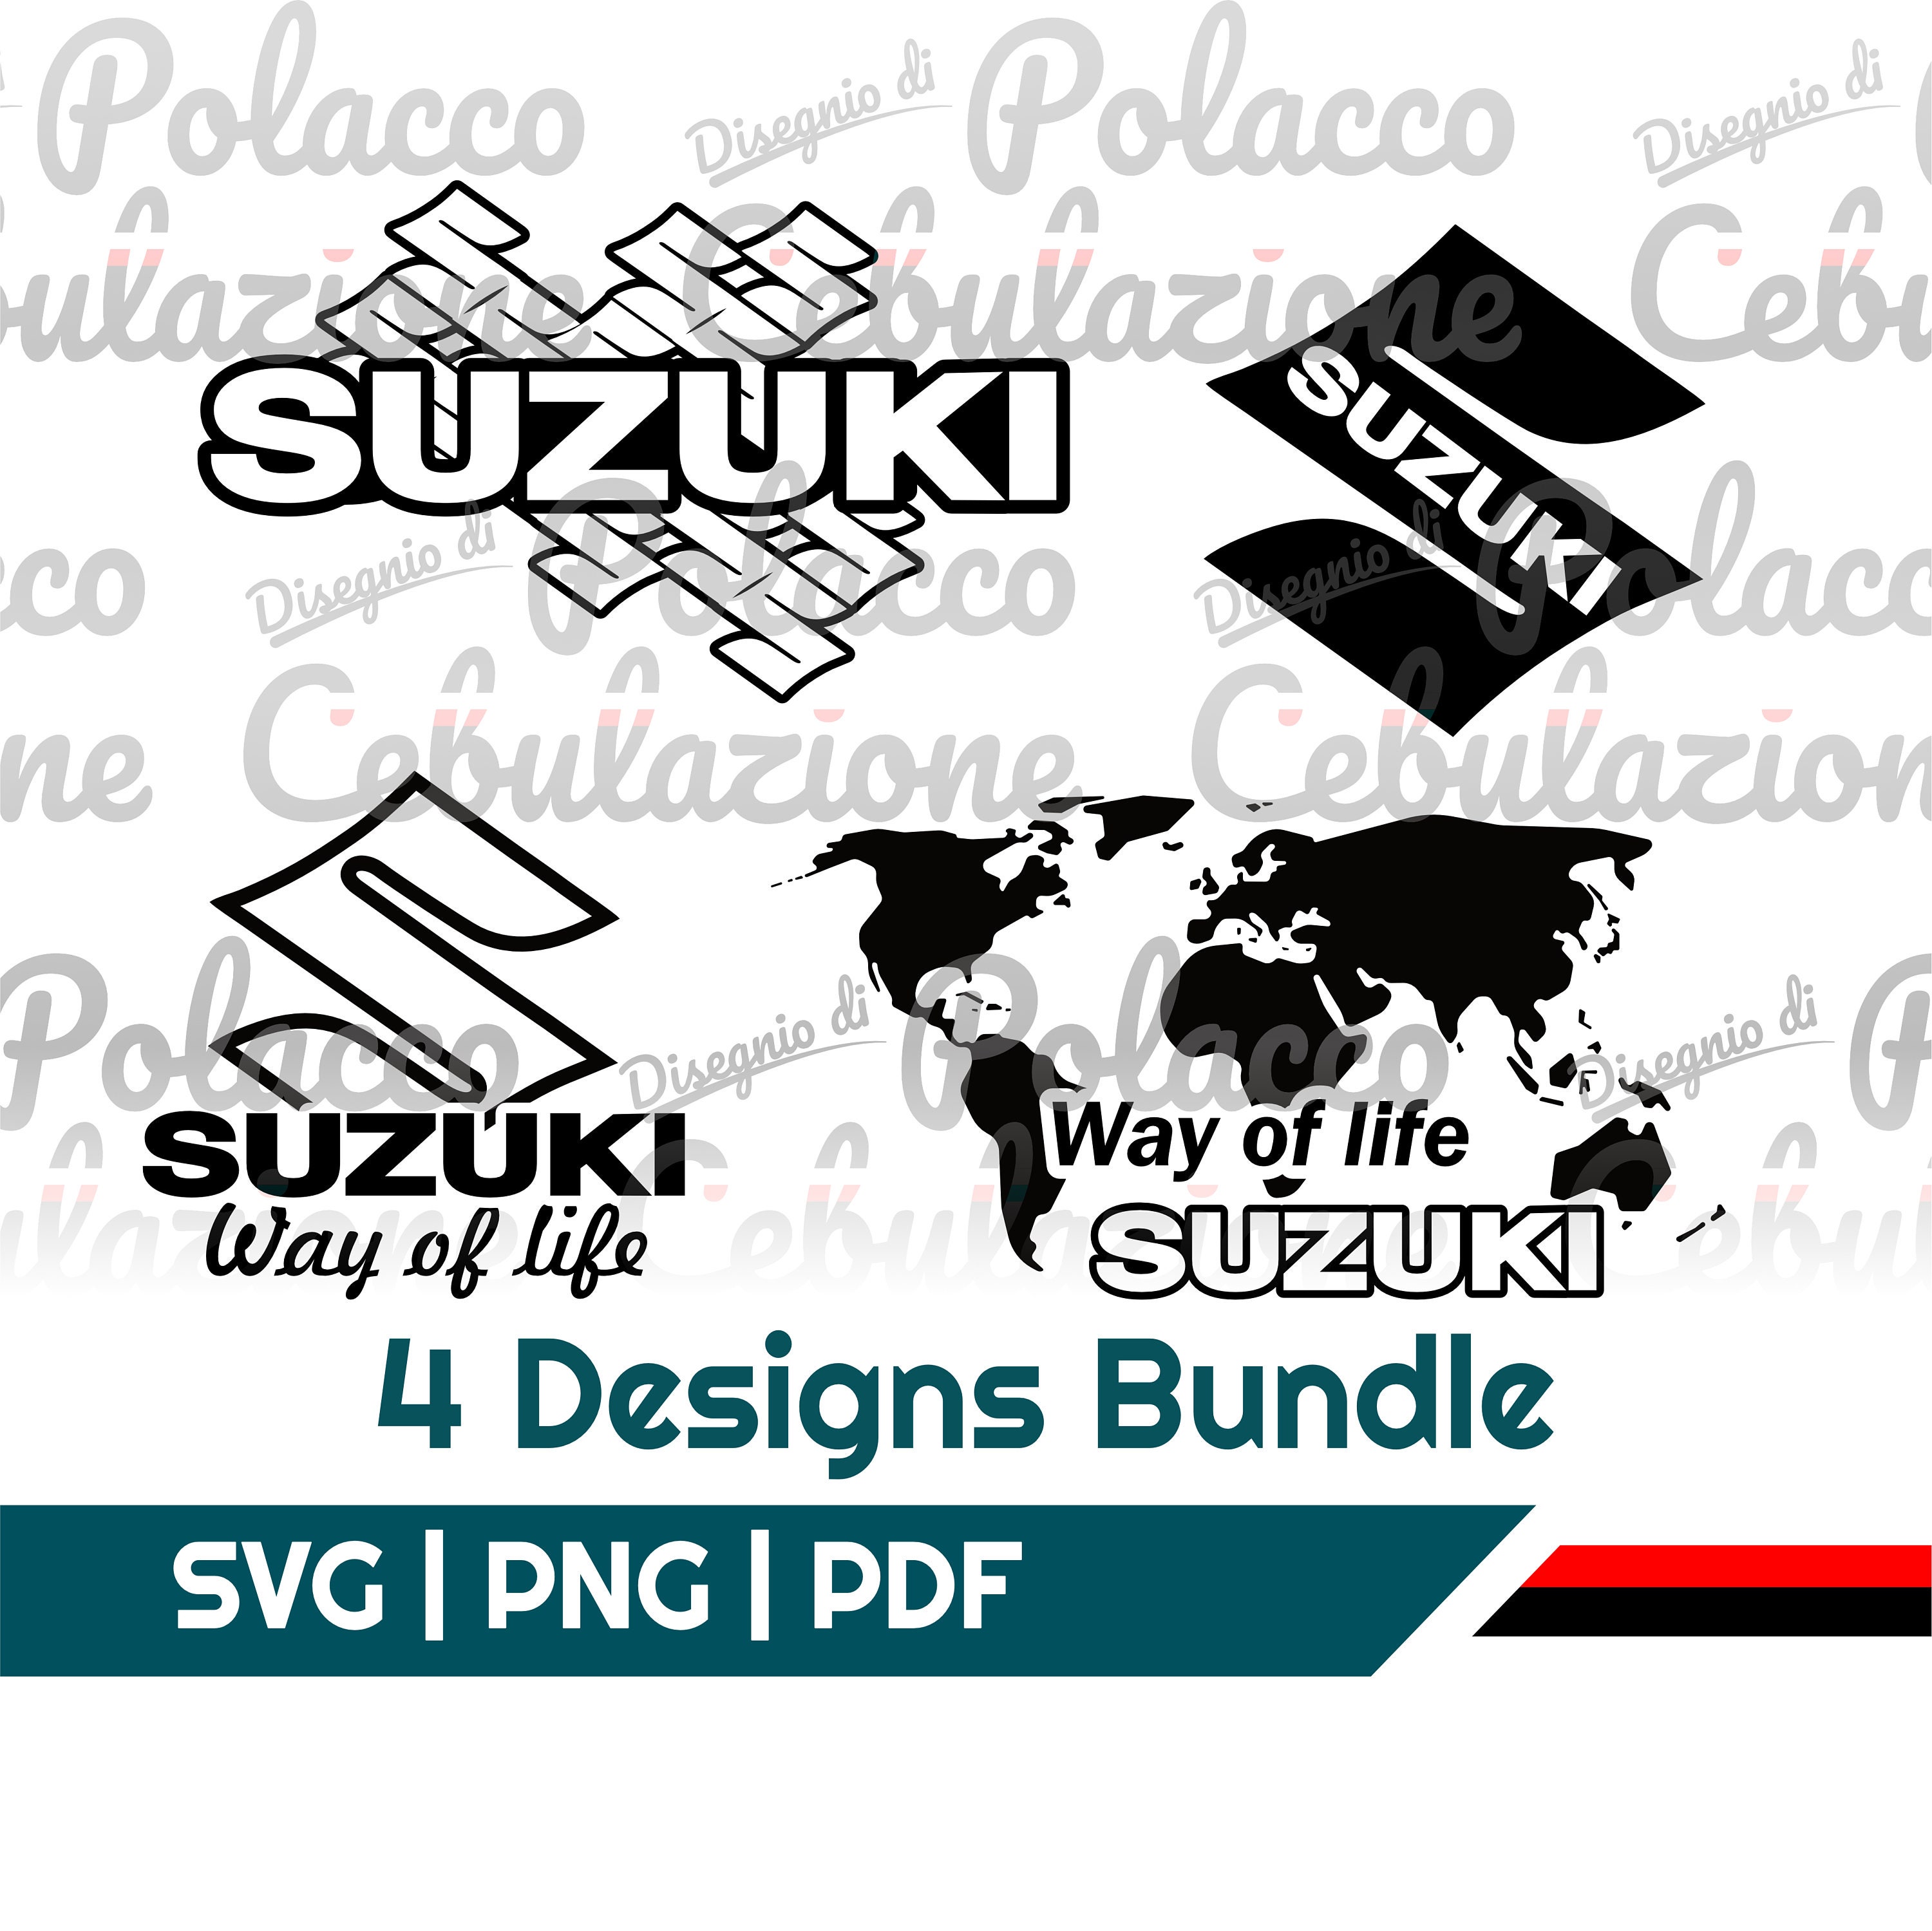 A171 Suzuki Sticker for Car Bike Exterior Access125 Burgman Tank Scooty  Suzuki Logo White Decals L x H 20 x 5 Cm